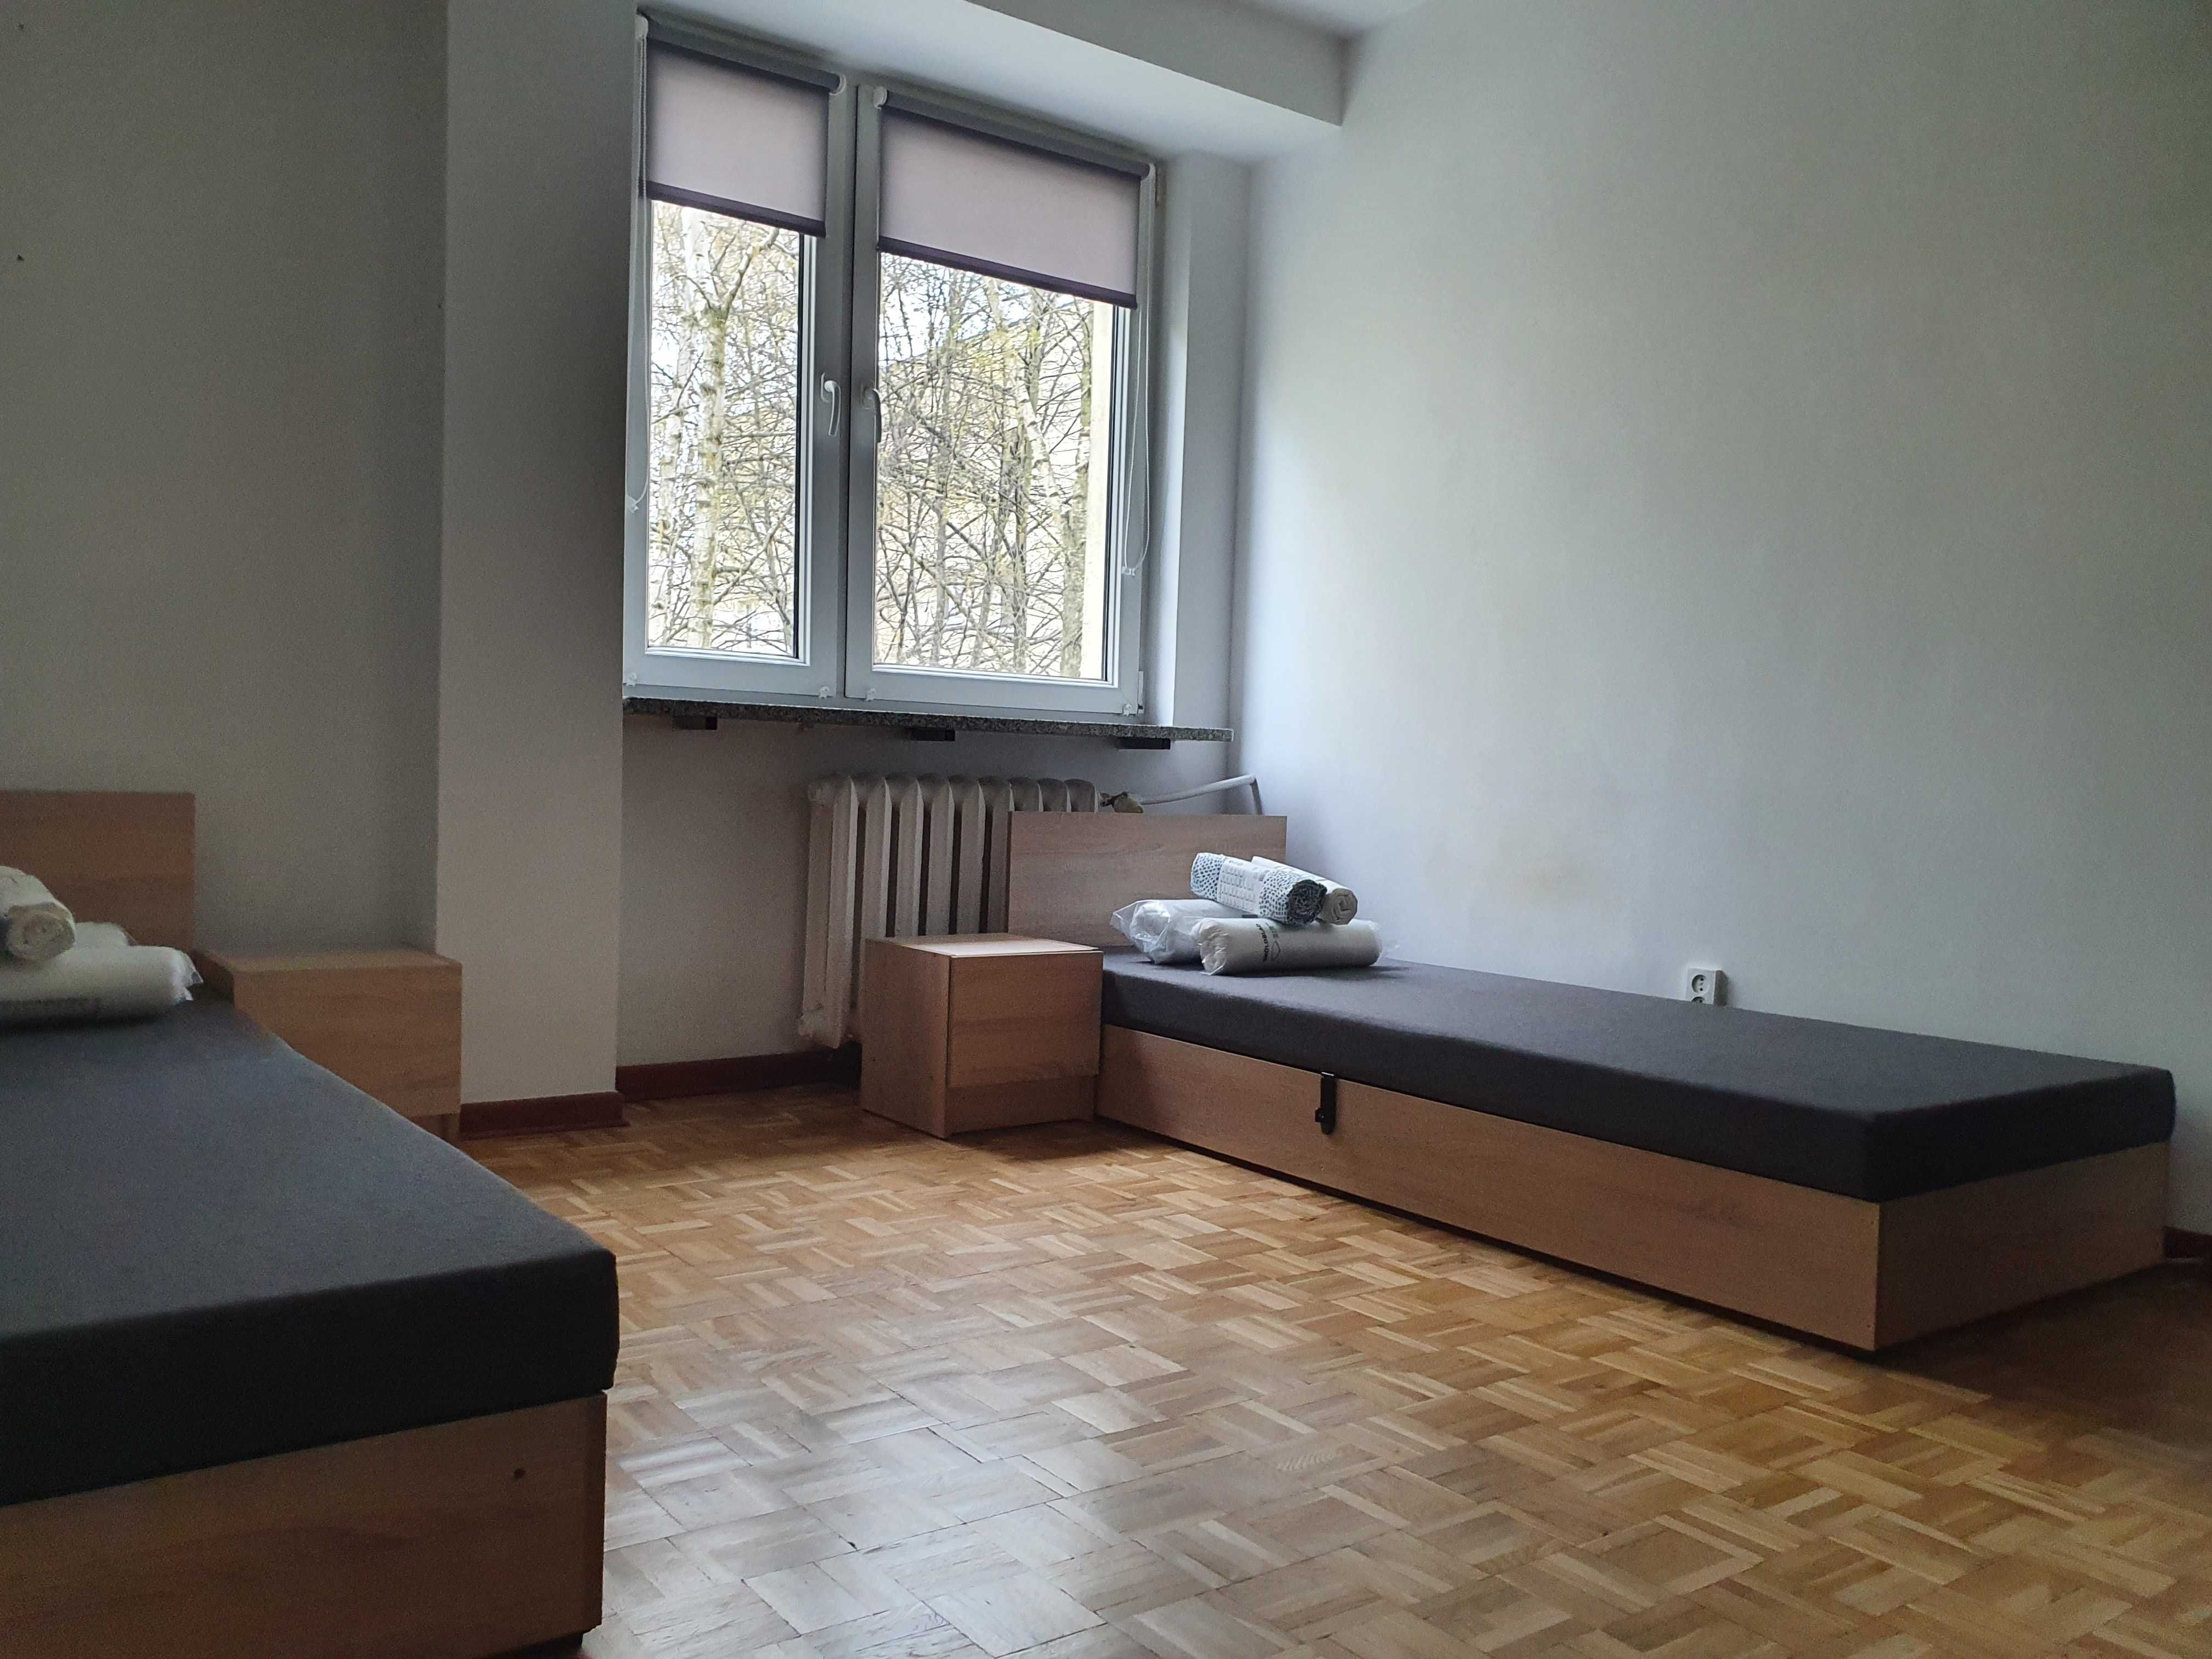 Mieszkanie dla pracowników 7 osób Gocław, Nowe! 990zł osoba.